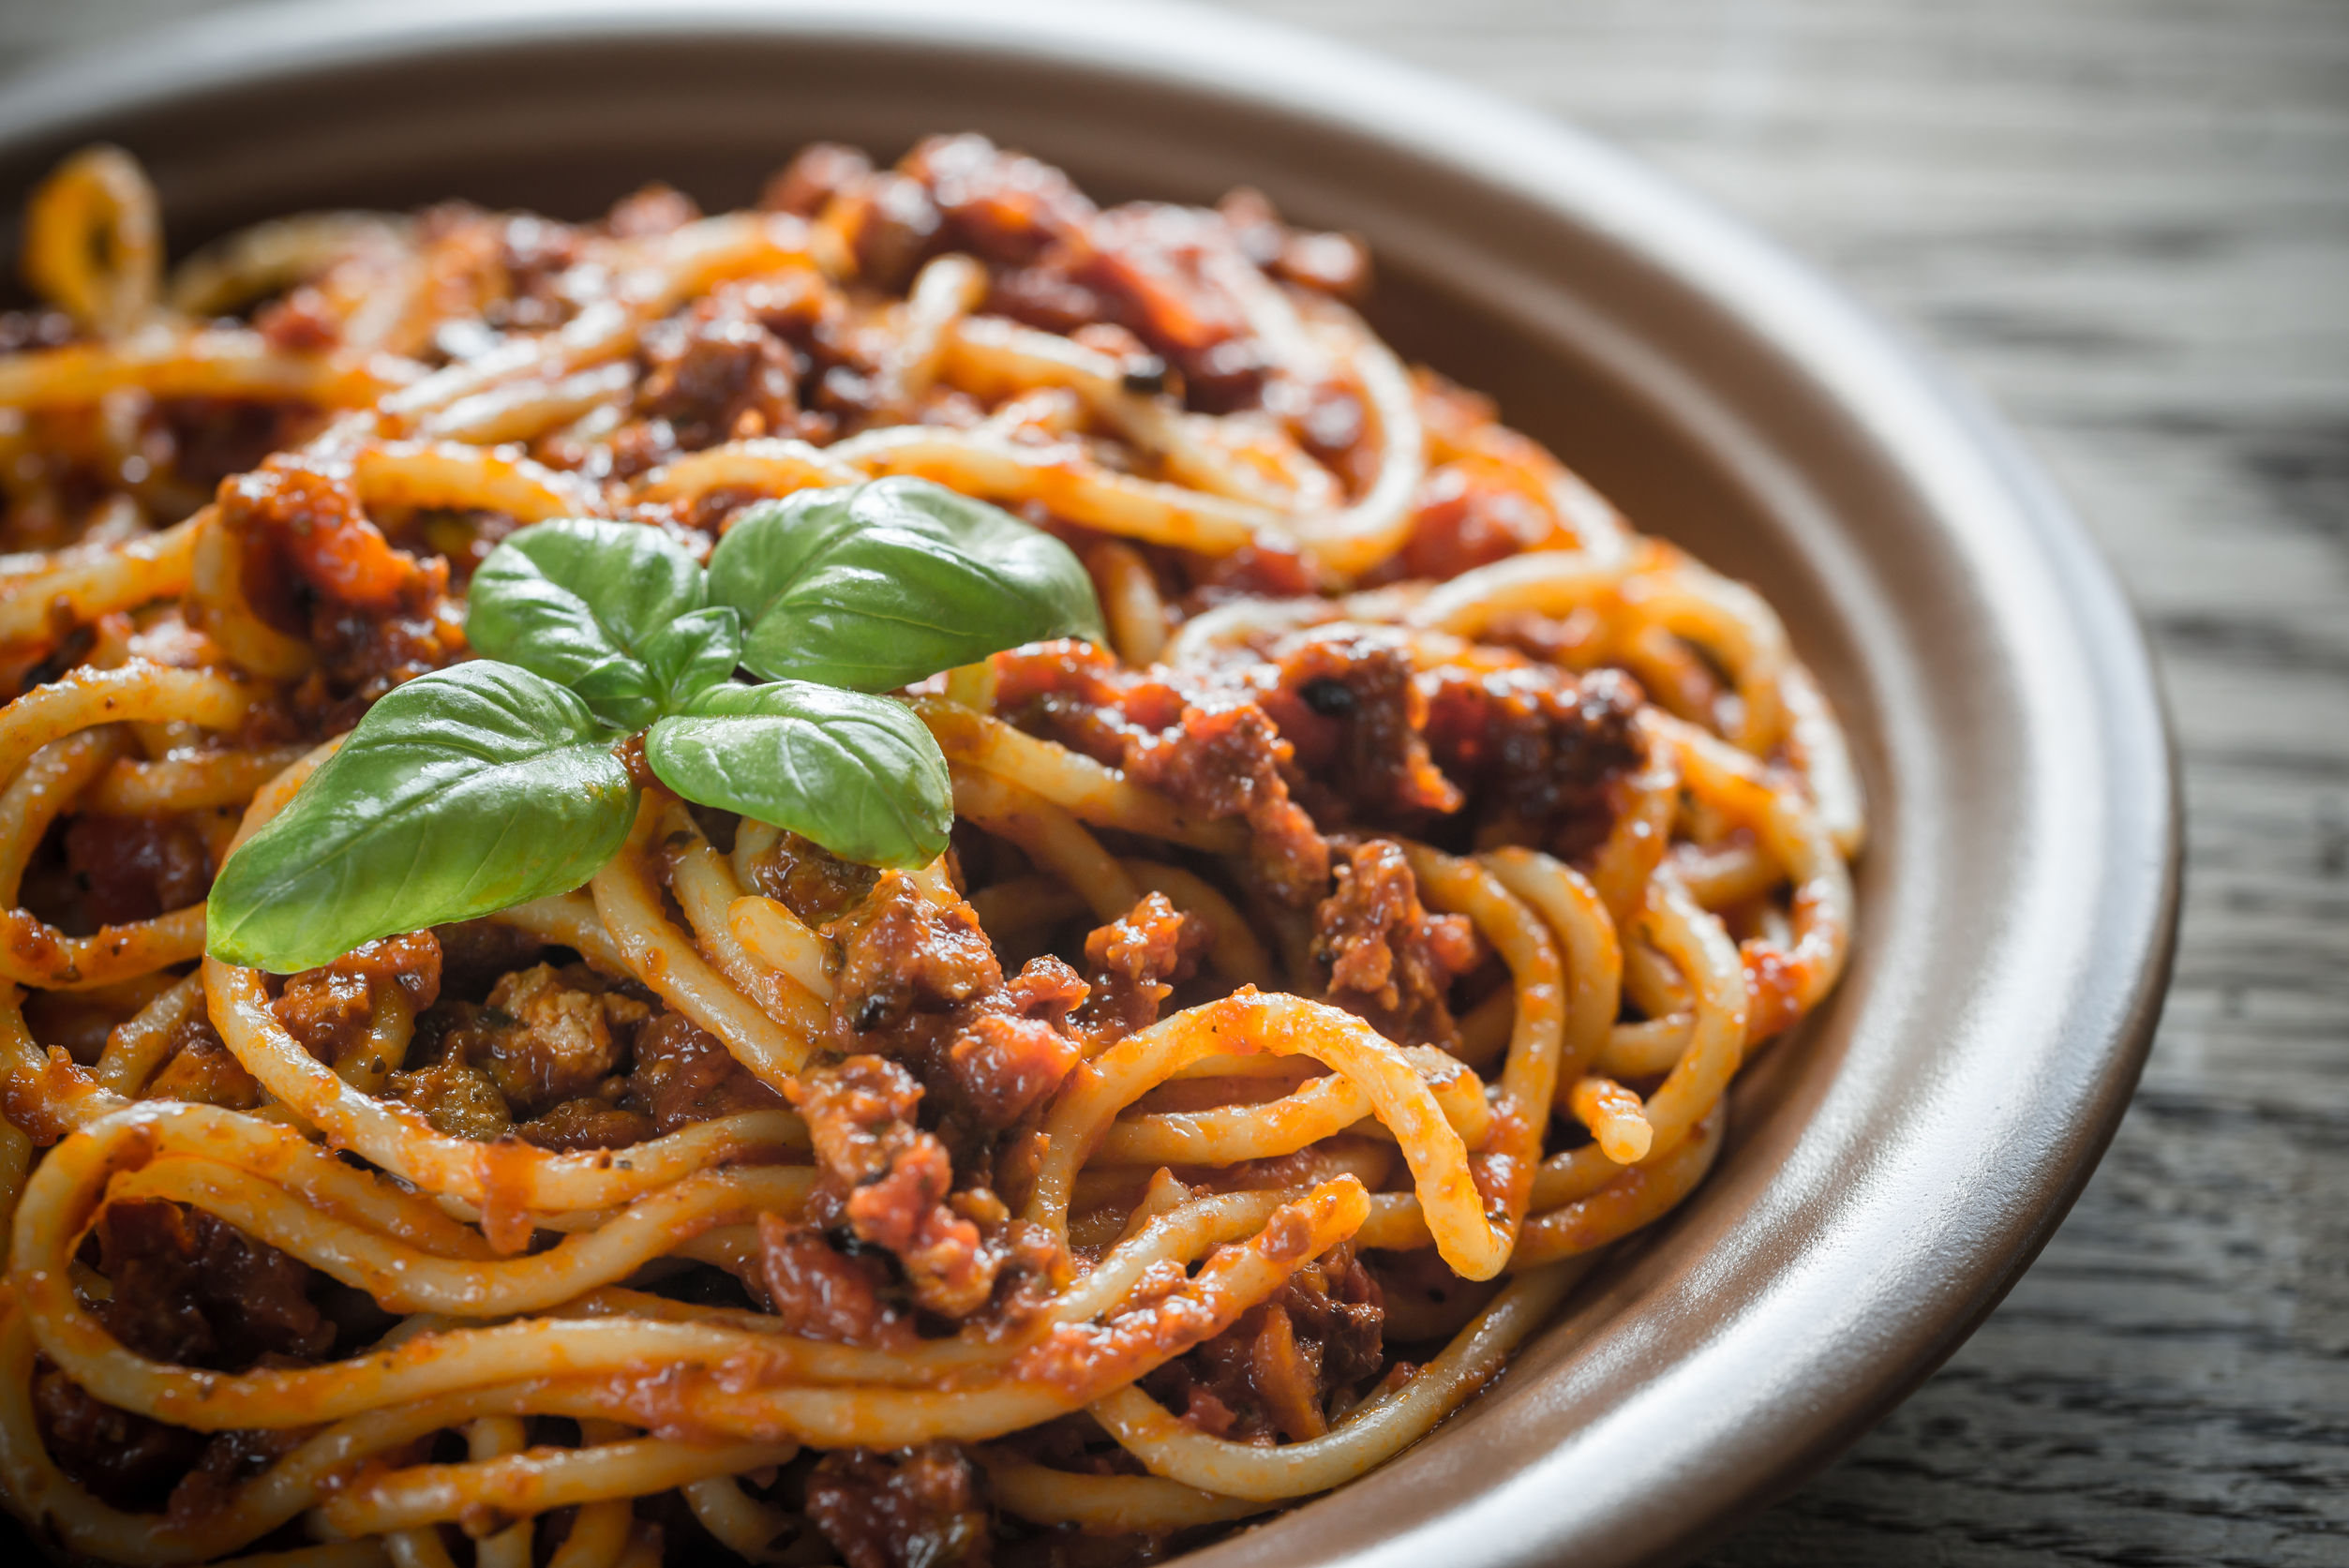 Gli spaghetti alla bolognese non esistono... o forse si